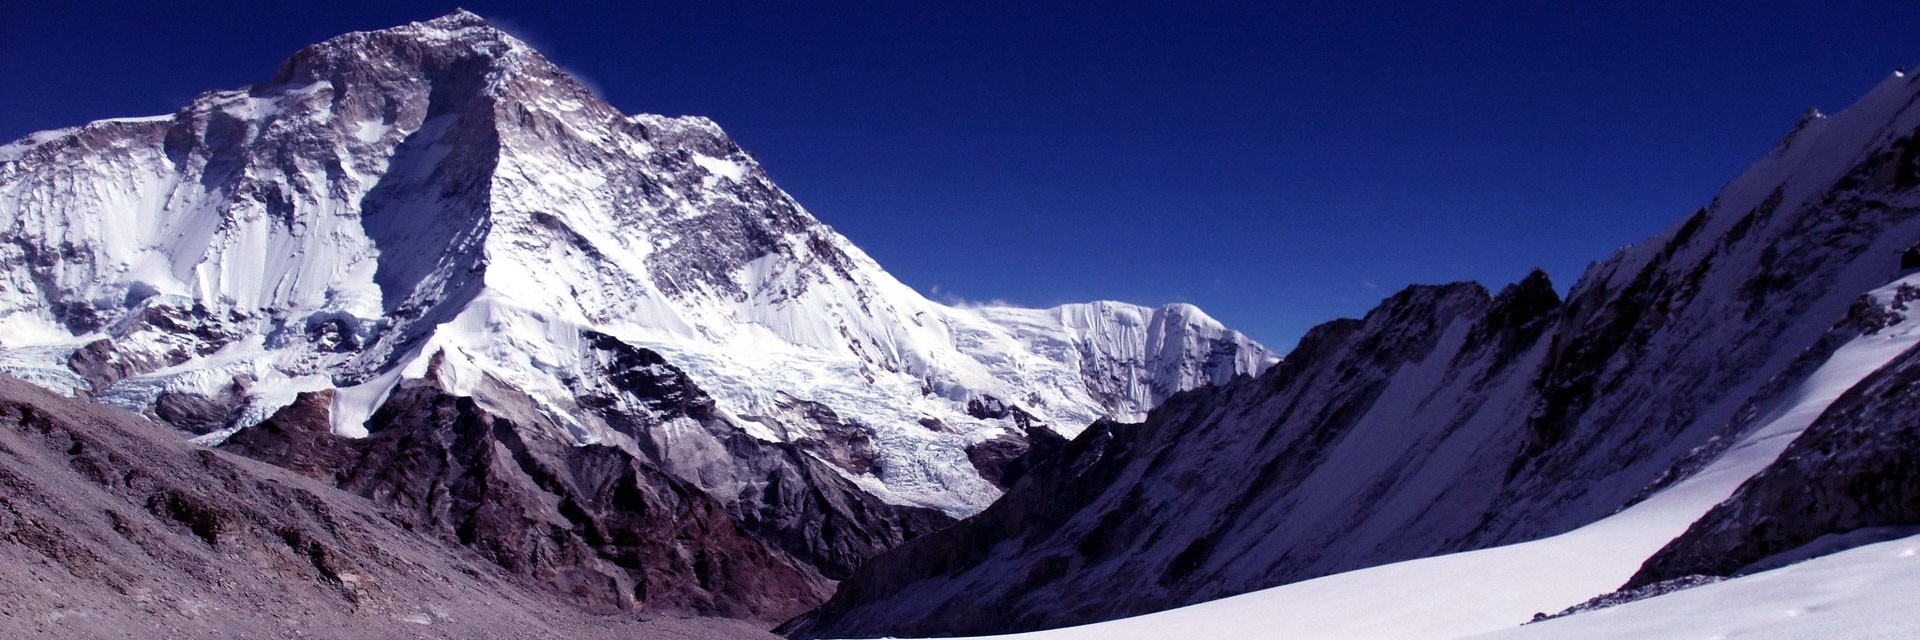 Eastern Nepal Trek